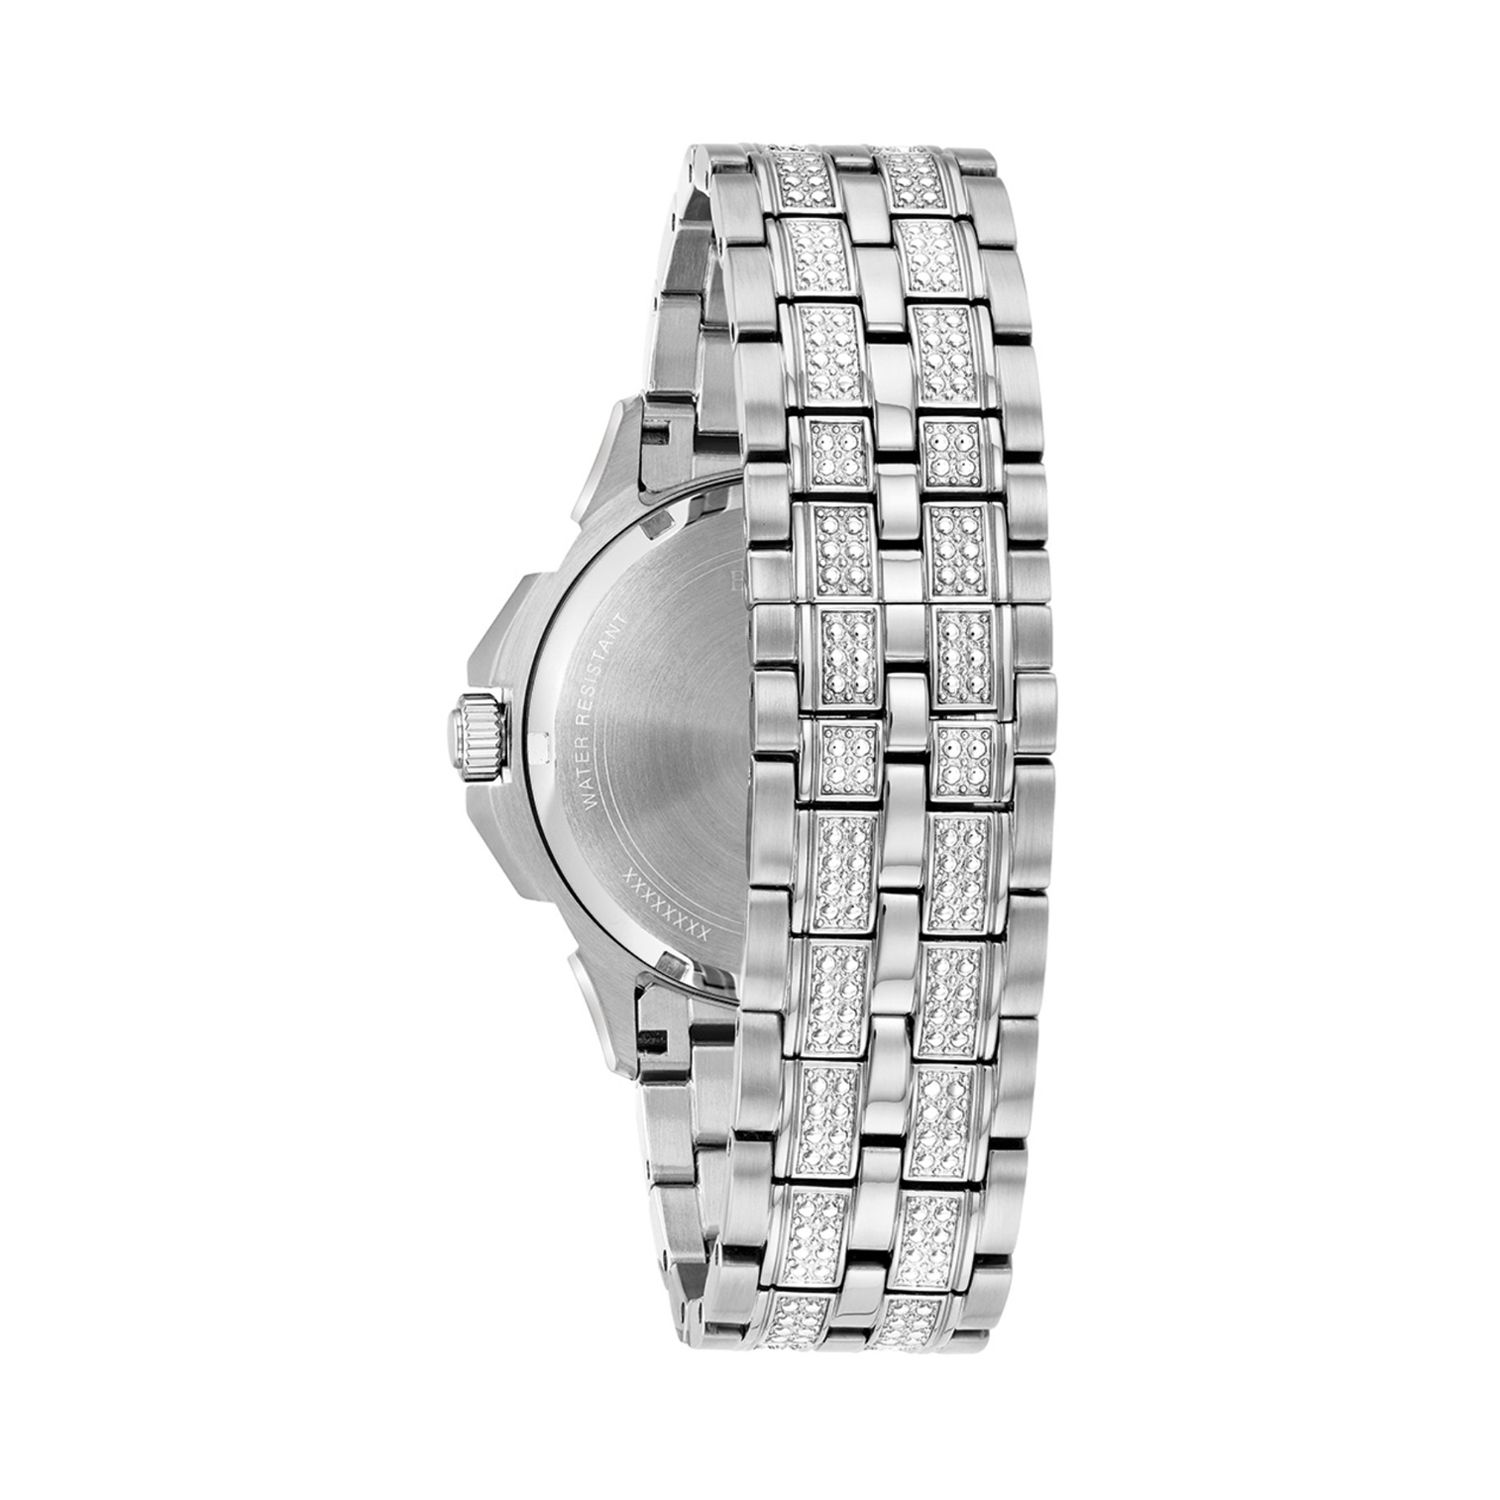 Мужские часы Octava Crystal из нержавеющей стали - 96C134 Bulova мужские часы phantom crystal pave из нержавеющей стали 98b324 bulova